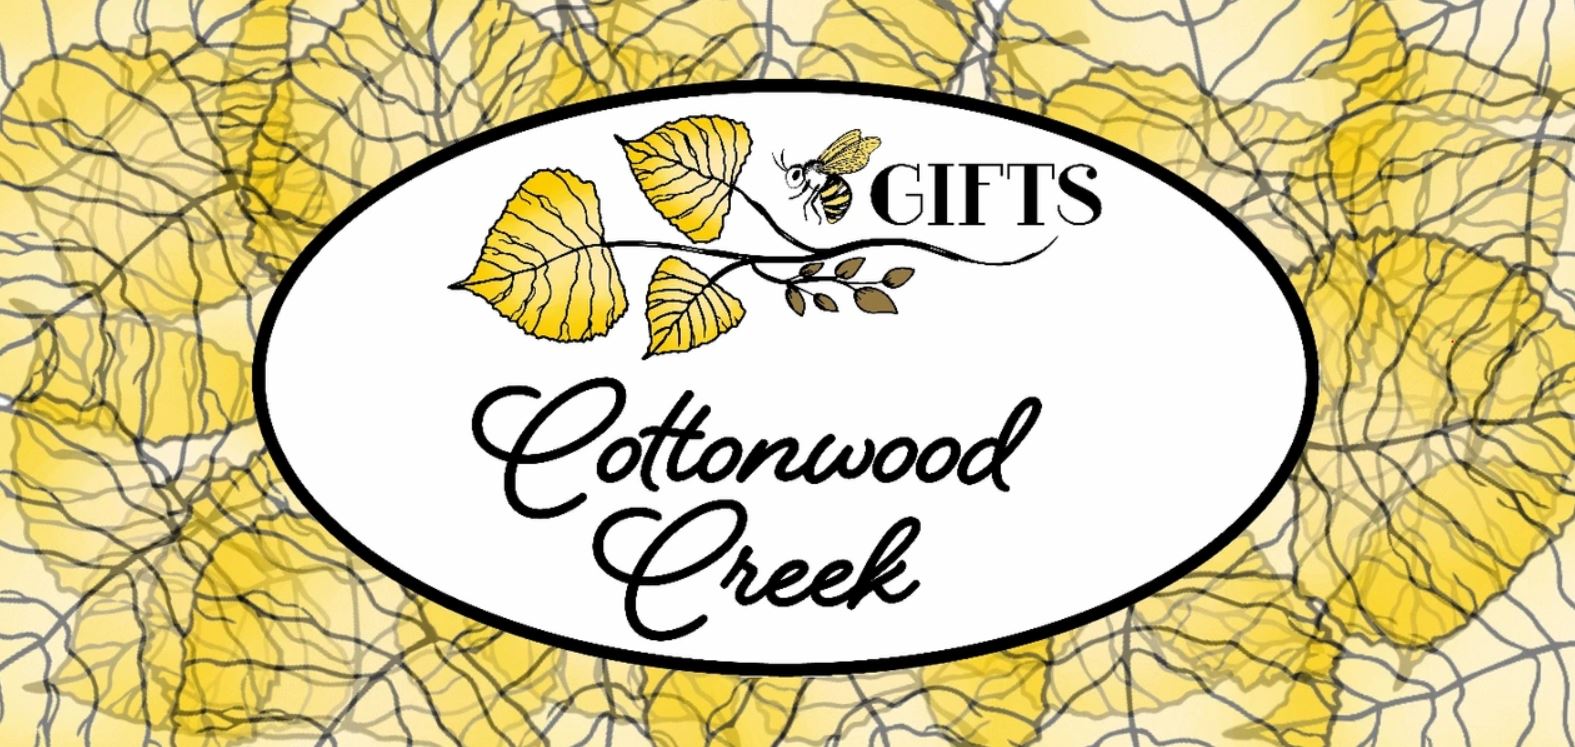 Cottonwood Creek Gifts